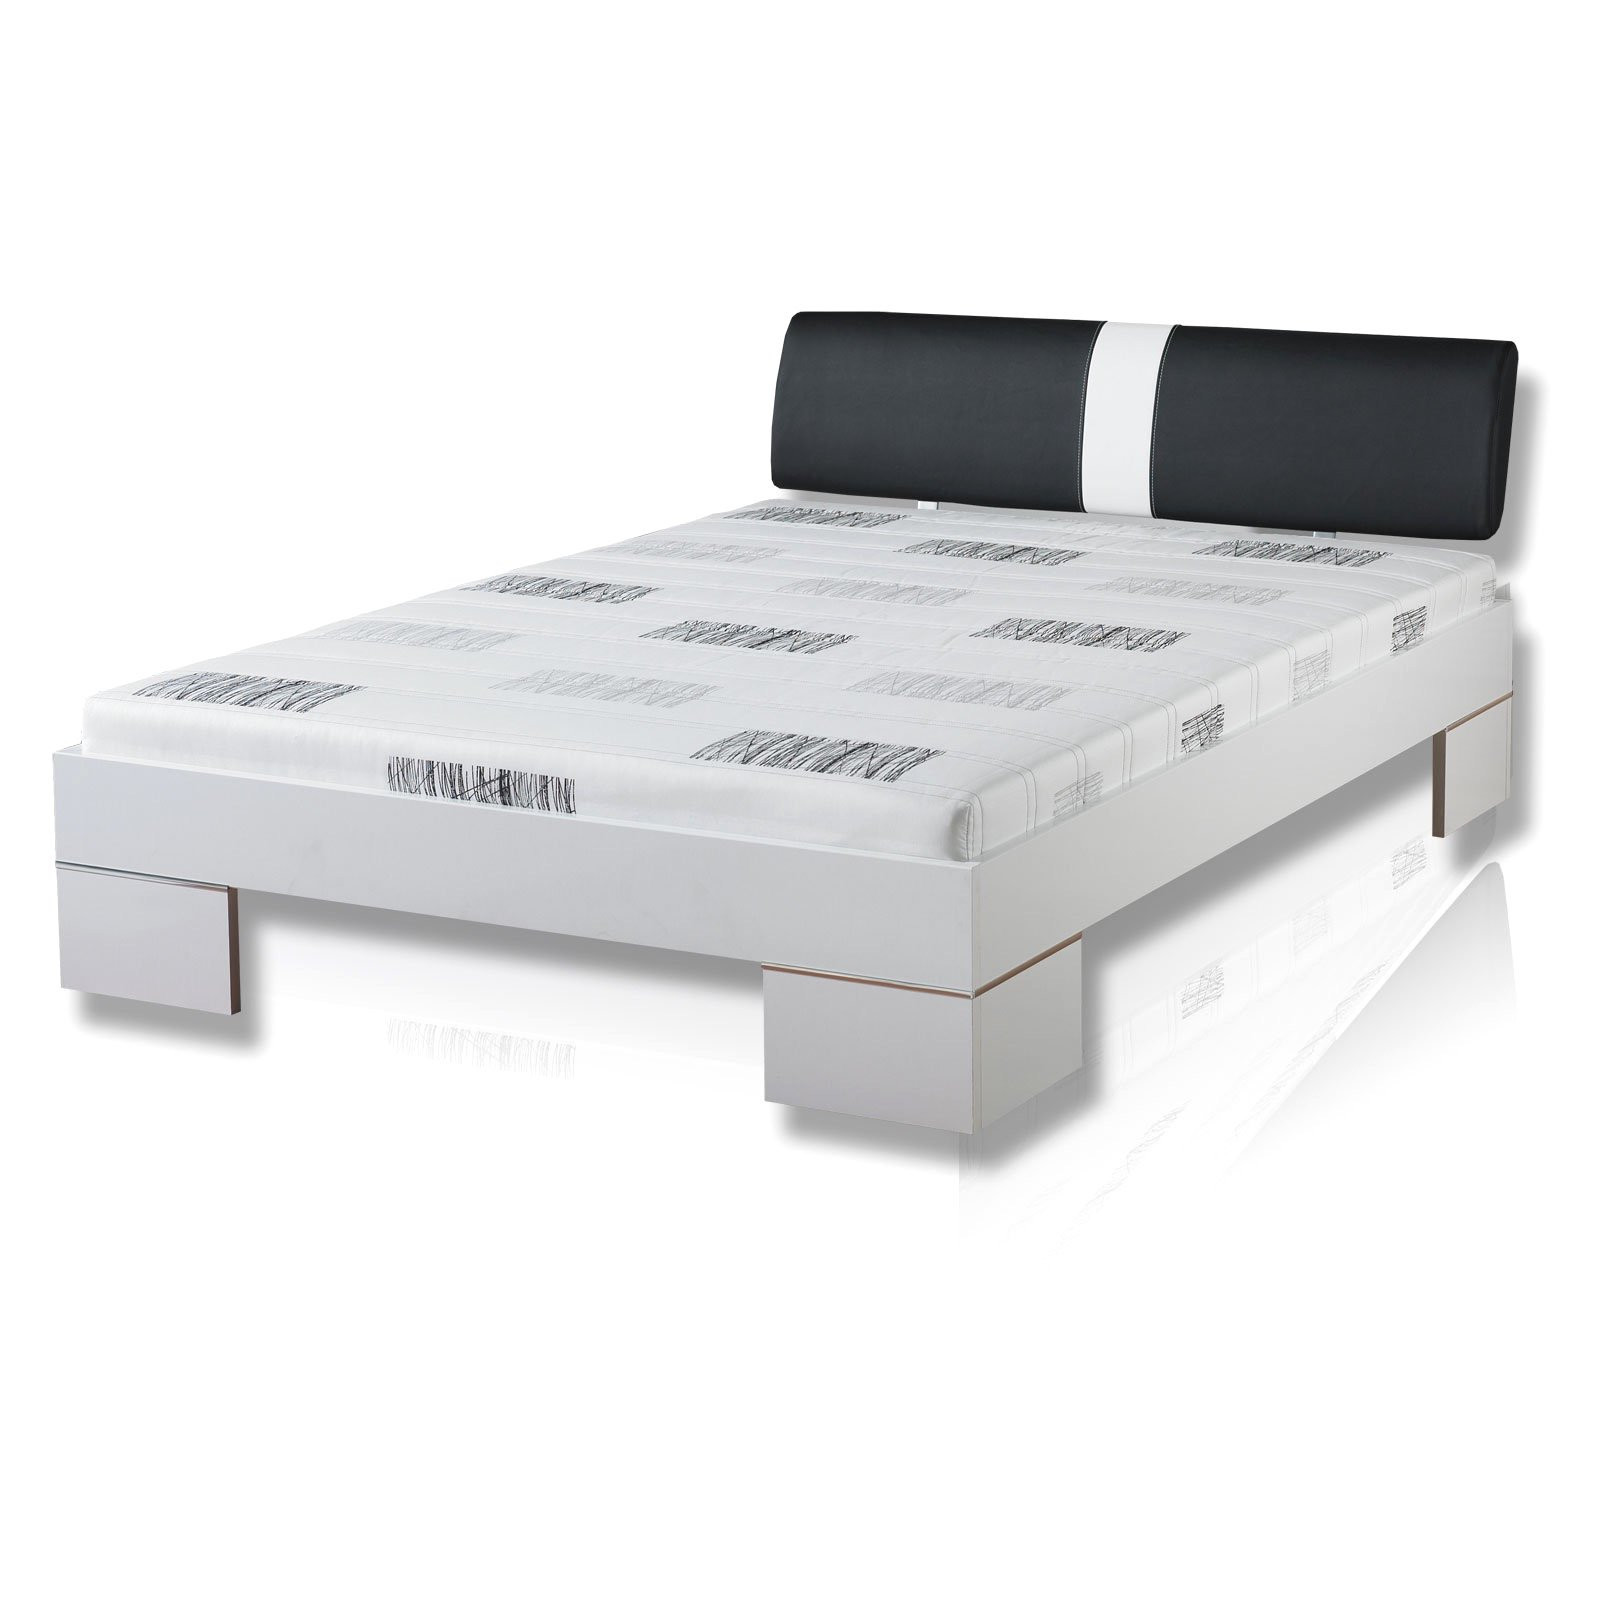 Bett Mit Matratze Und Lattenrost
 bett mit matratze und lattenrost 140×200 günstig